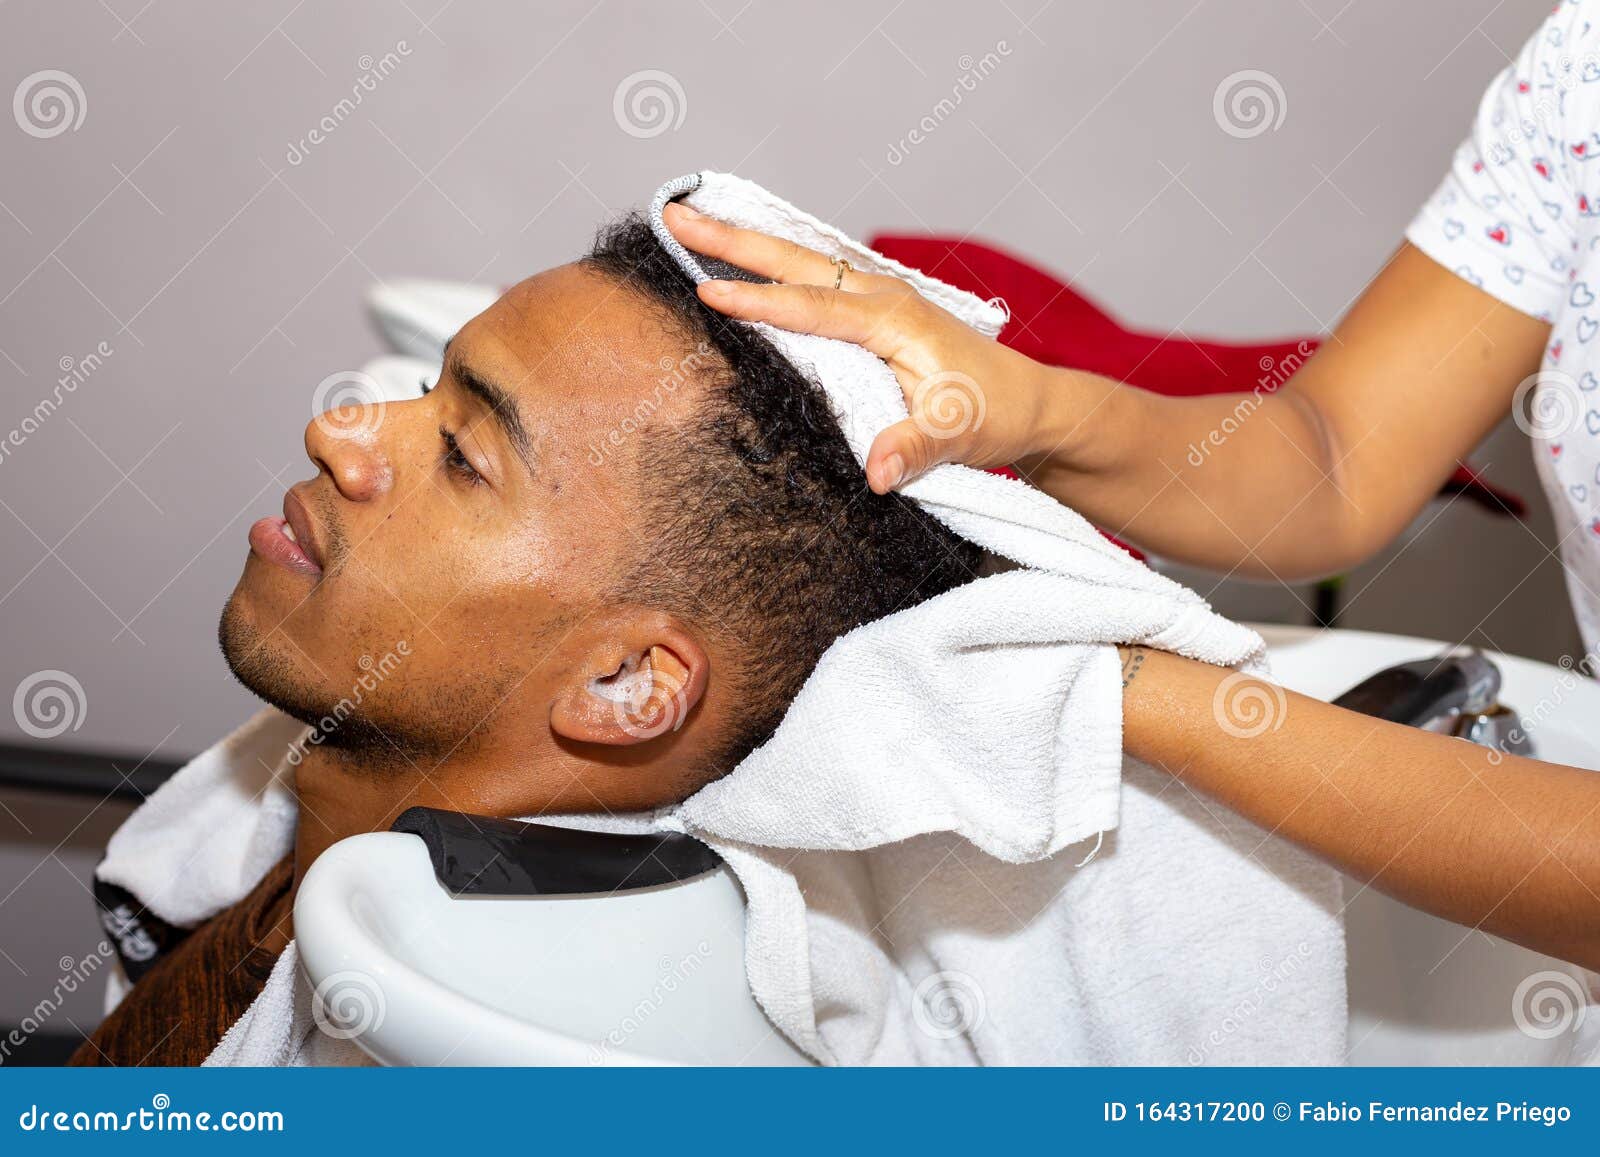 cabeleireiro secando o cabelo de seu cliente com um secador de